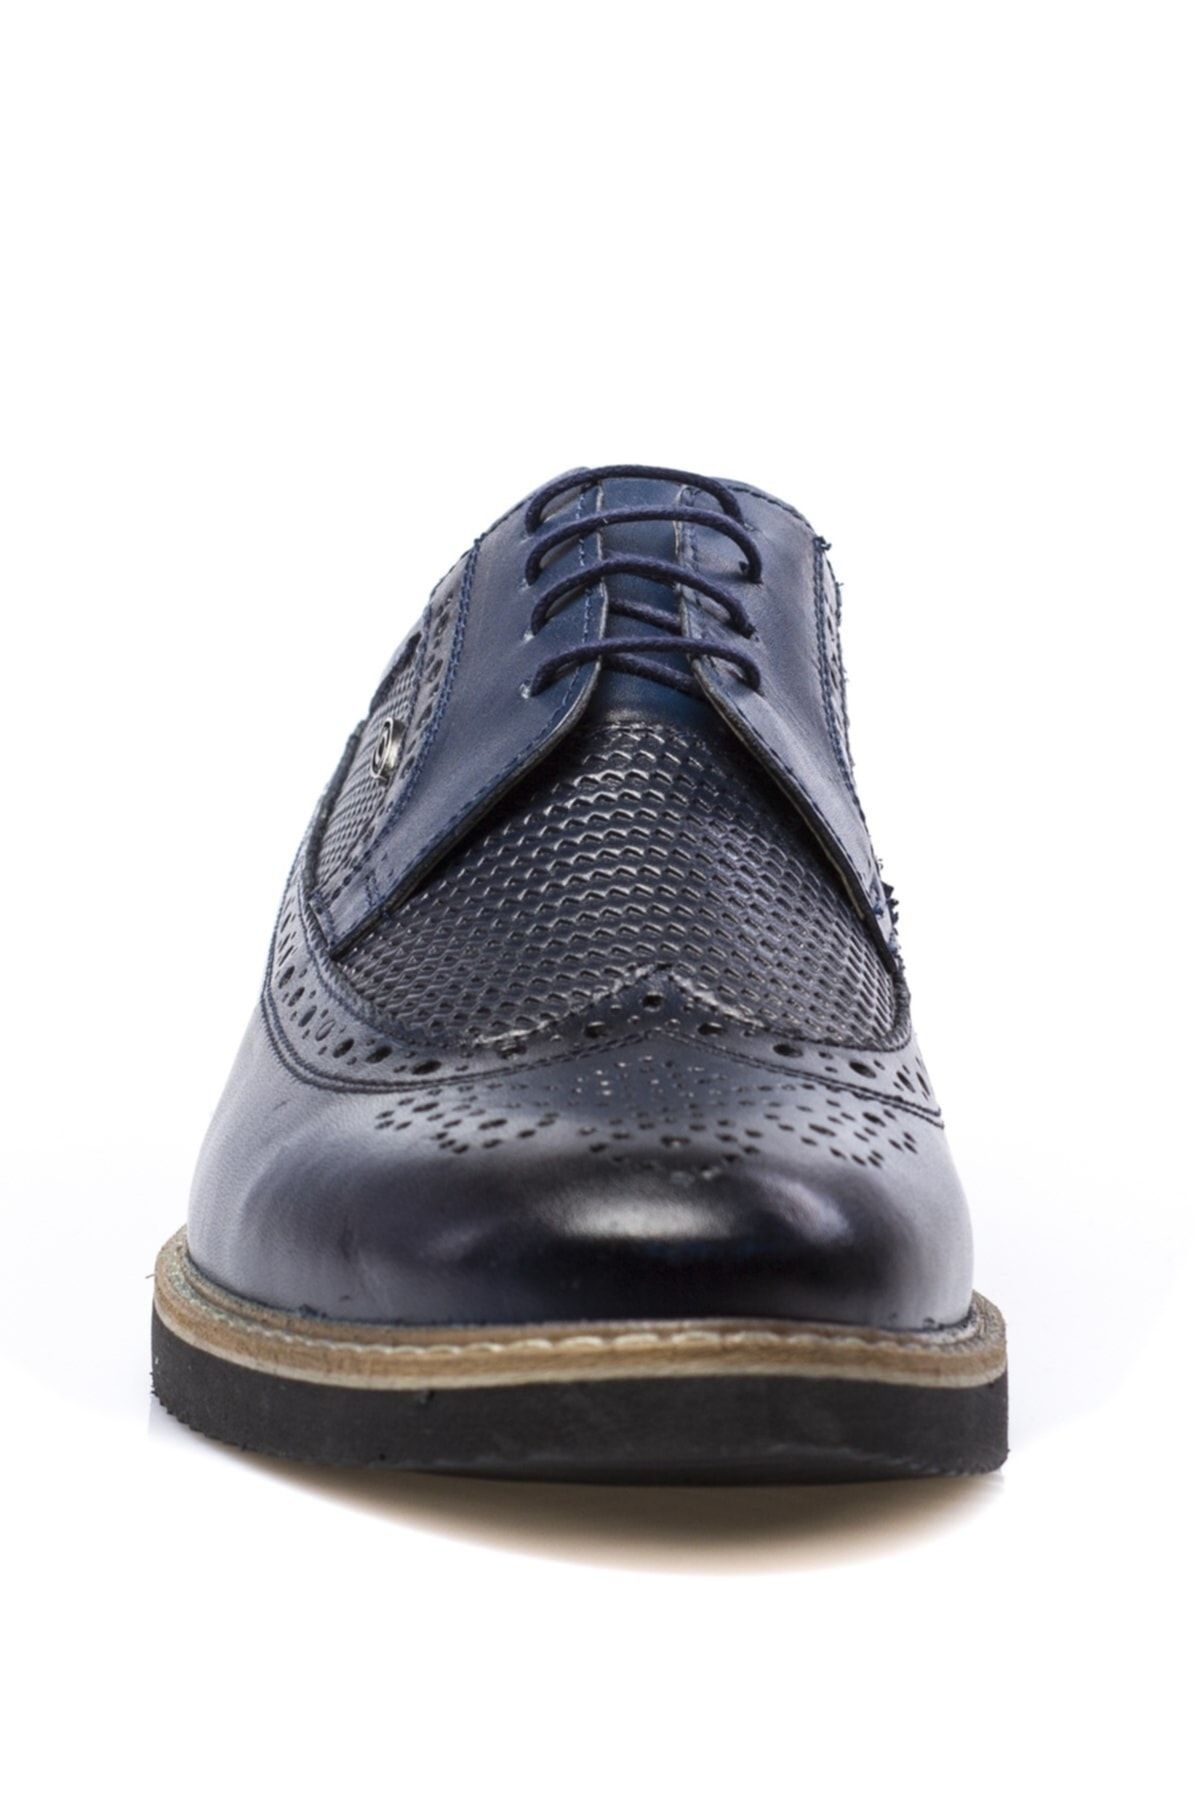 Hakiki Deri Lacivert Erkek Klasik Ayakkabı PRA-591260-035529